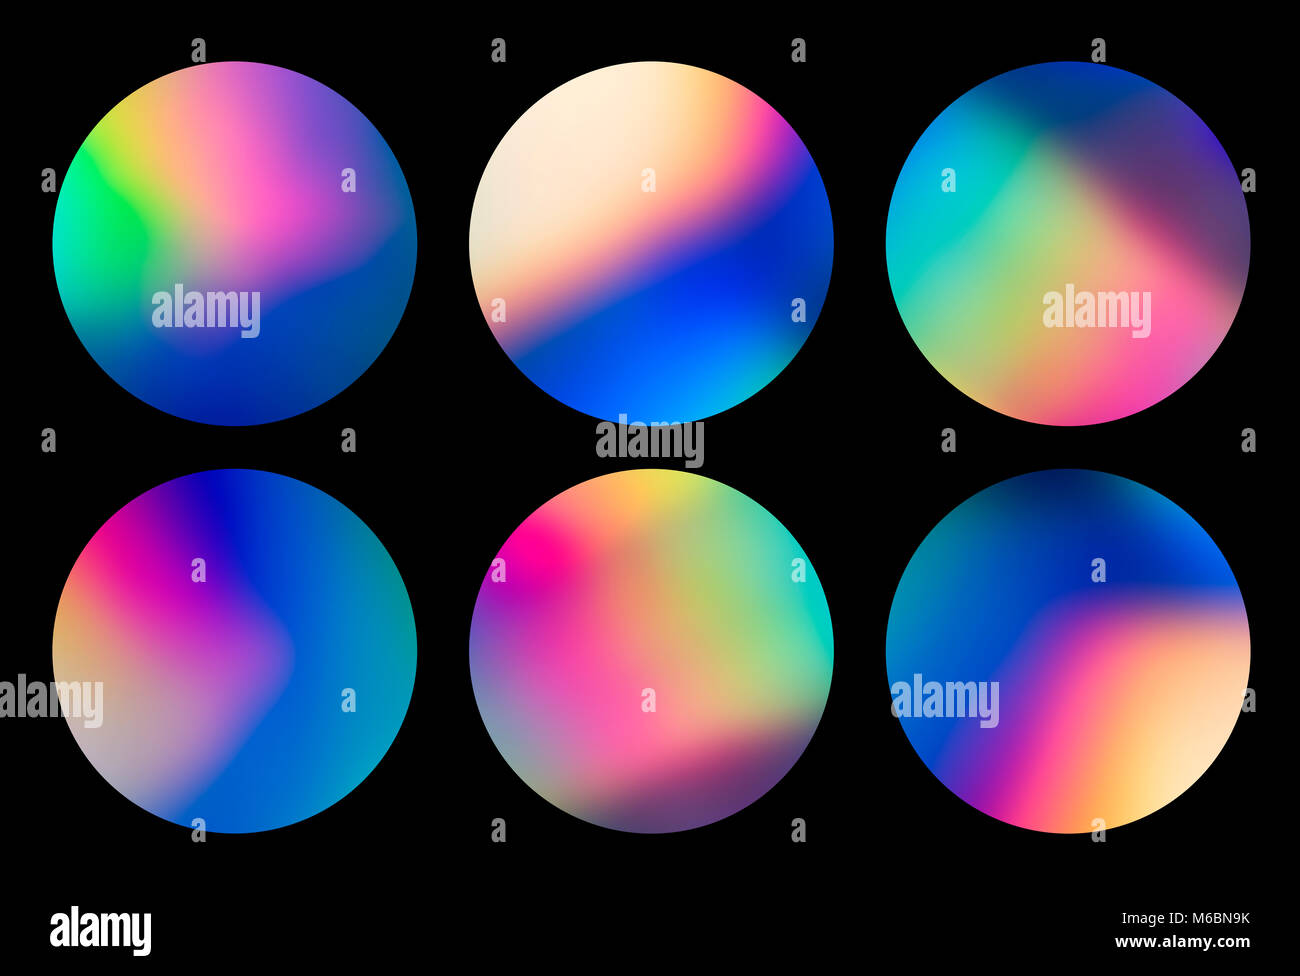 Résumé du spectre circulaire holographique vaporwave conçoit, quartier branché de fond coloré dans des tons pastel couleur néon. Pour couvrir la conception créative, CD, poster, livre Banque D'Images